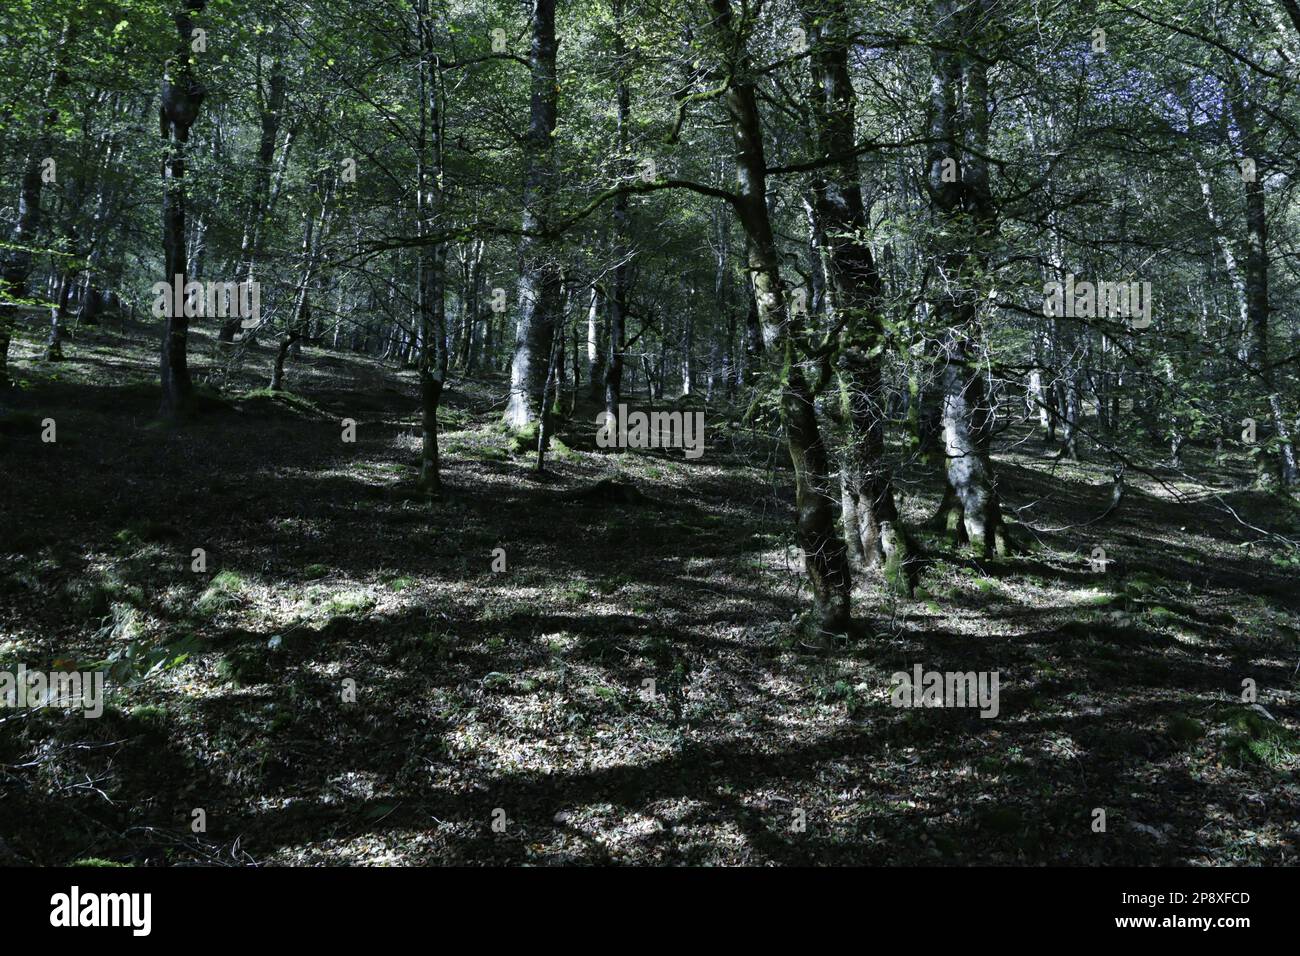 Bosque de hayas con el suelo limpio y verde en reserva natural del Saja, España Stock Photo